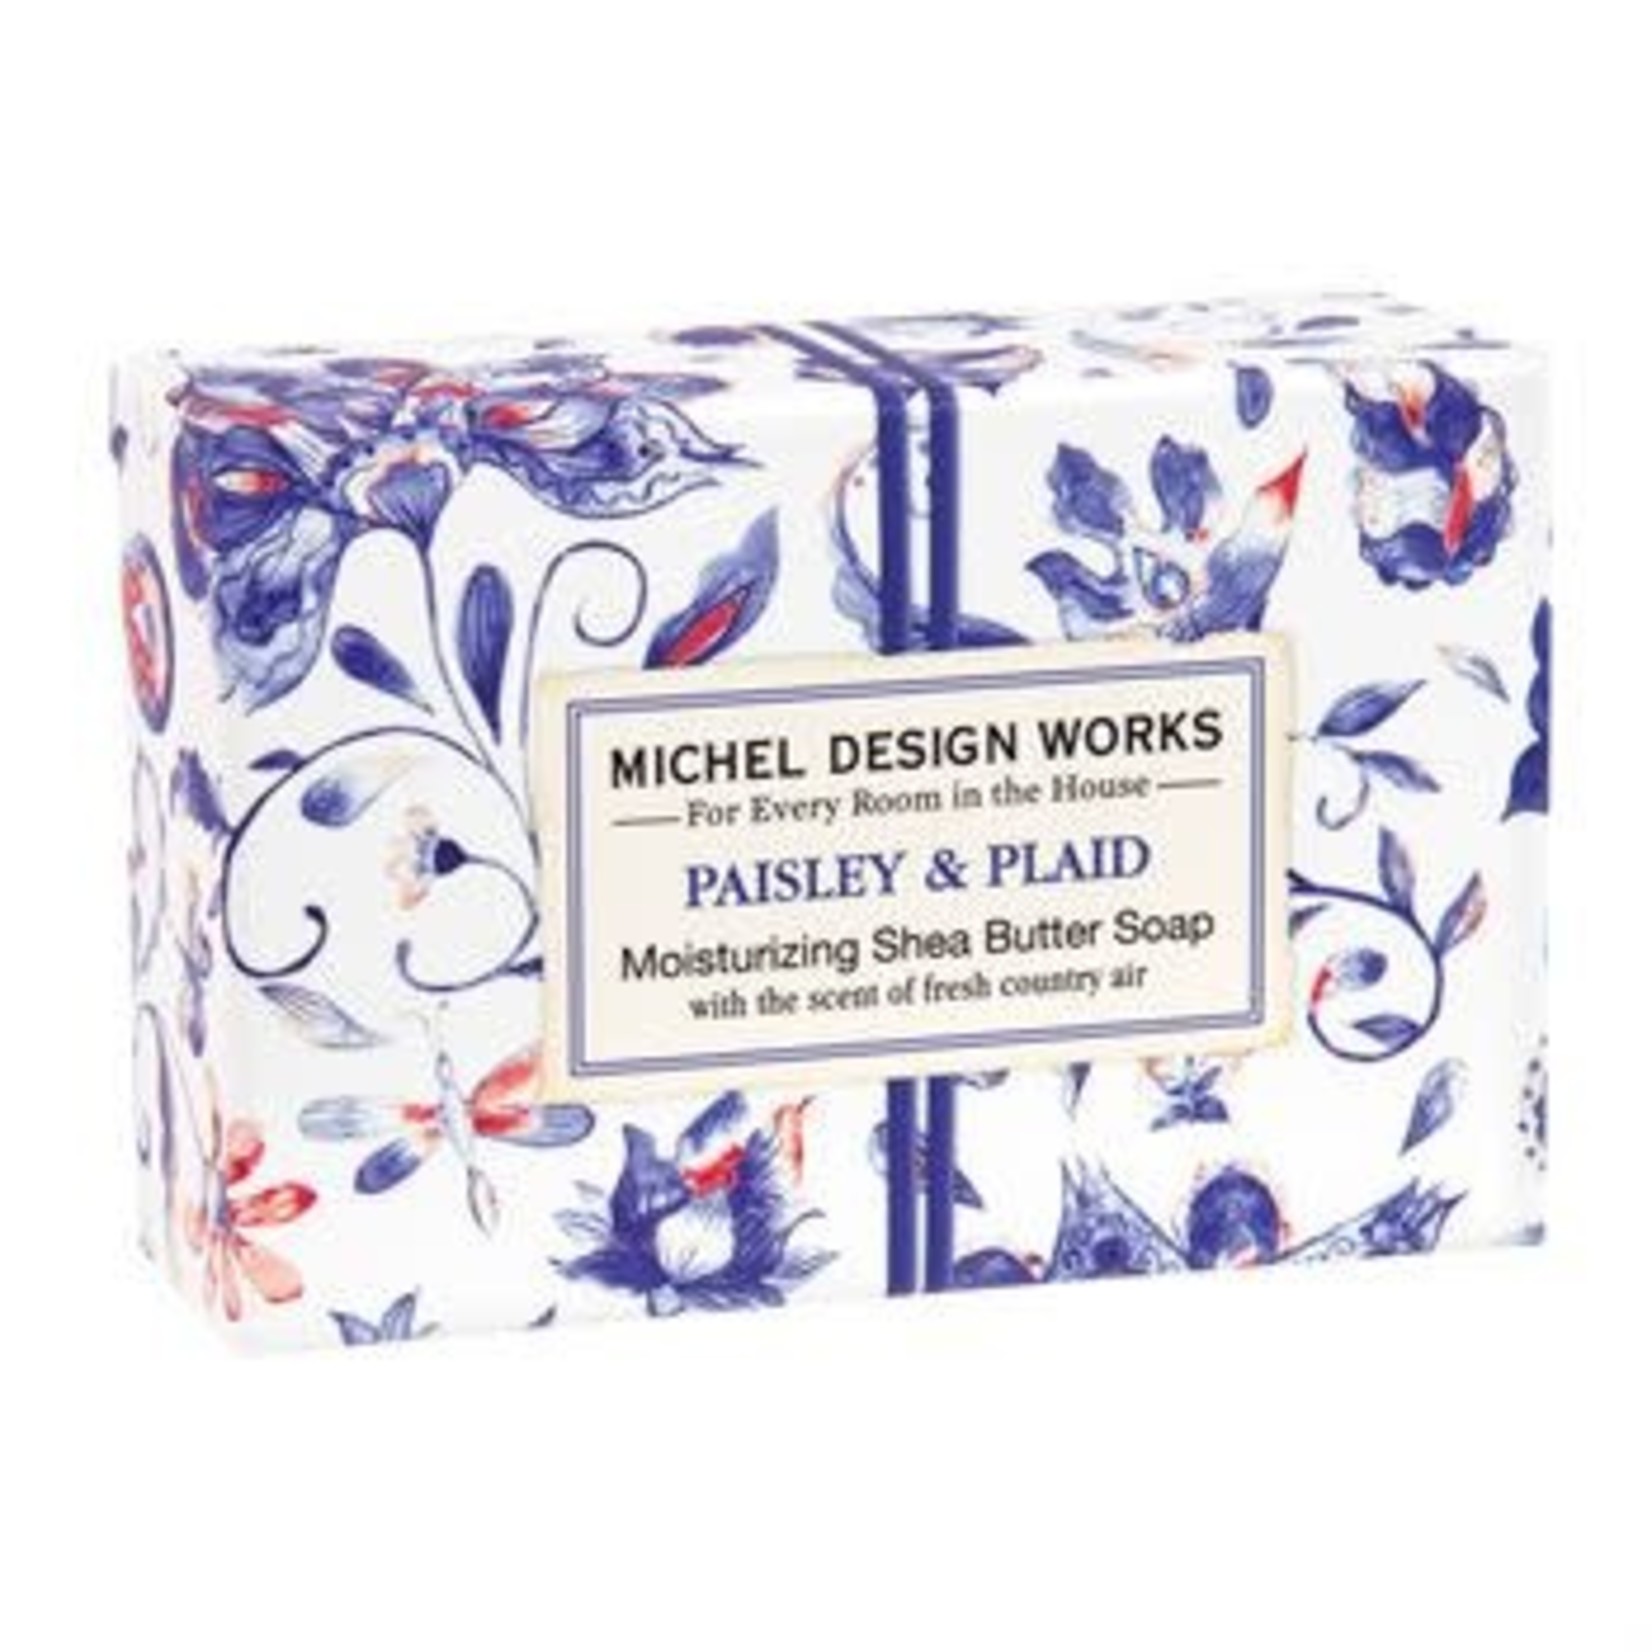 MICHELE DESIGN WORKS PAISLEY & PLAID 4.5OZ BOXED SOAP